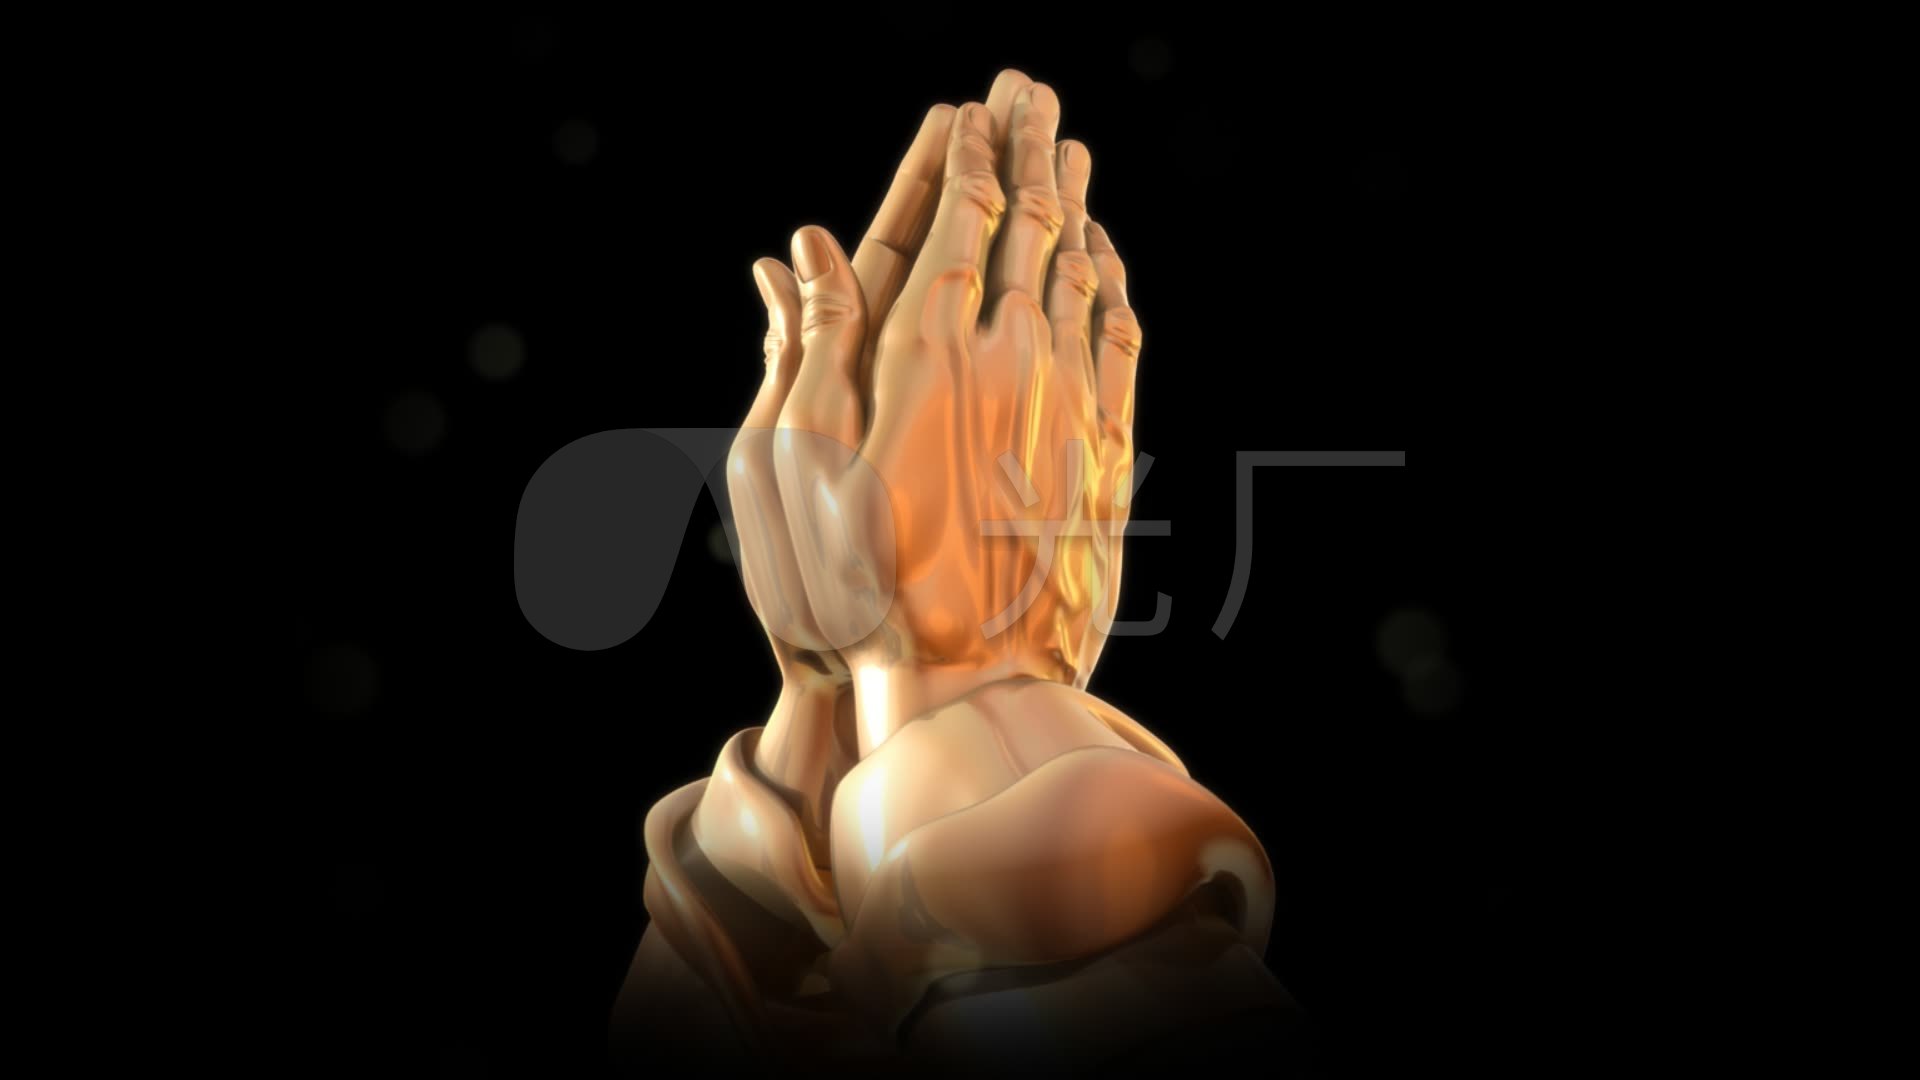 十字架双手合十祈祷祷告的手势模板免费下载_psd格式_650像素_编号41023510-千图网